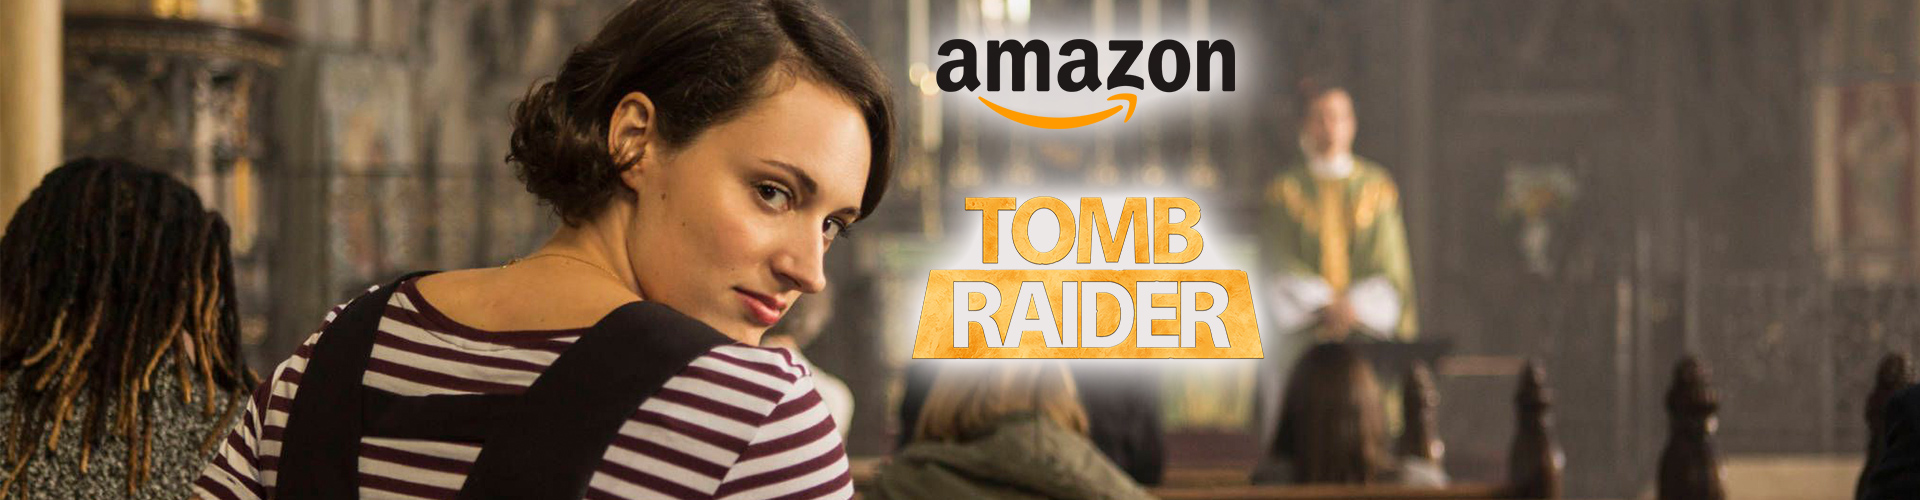 Amazon prepara una película y serie de Tomb Raider